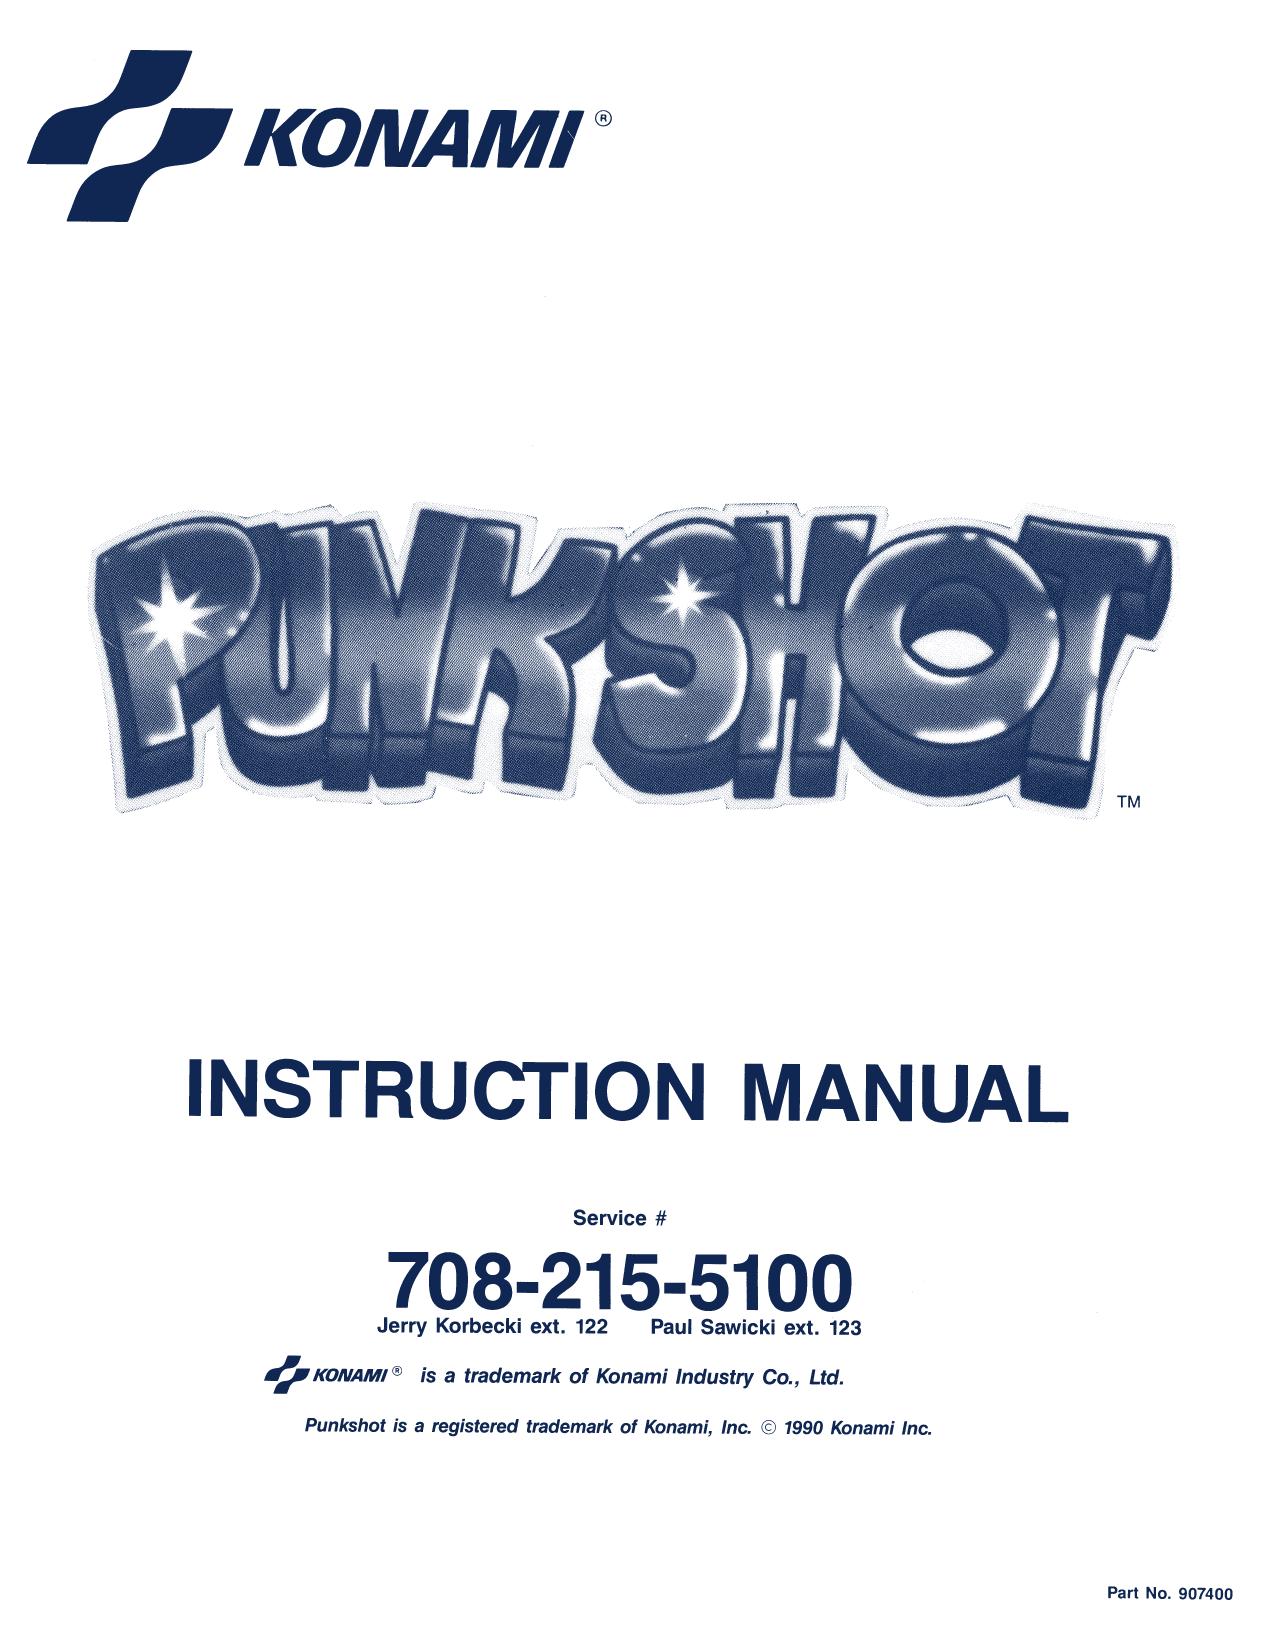 Konami Punkshot Manual